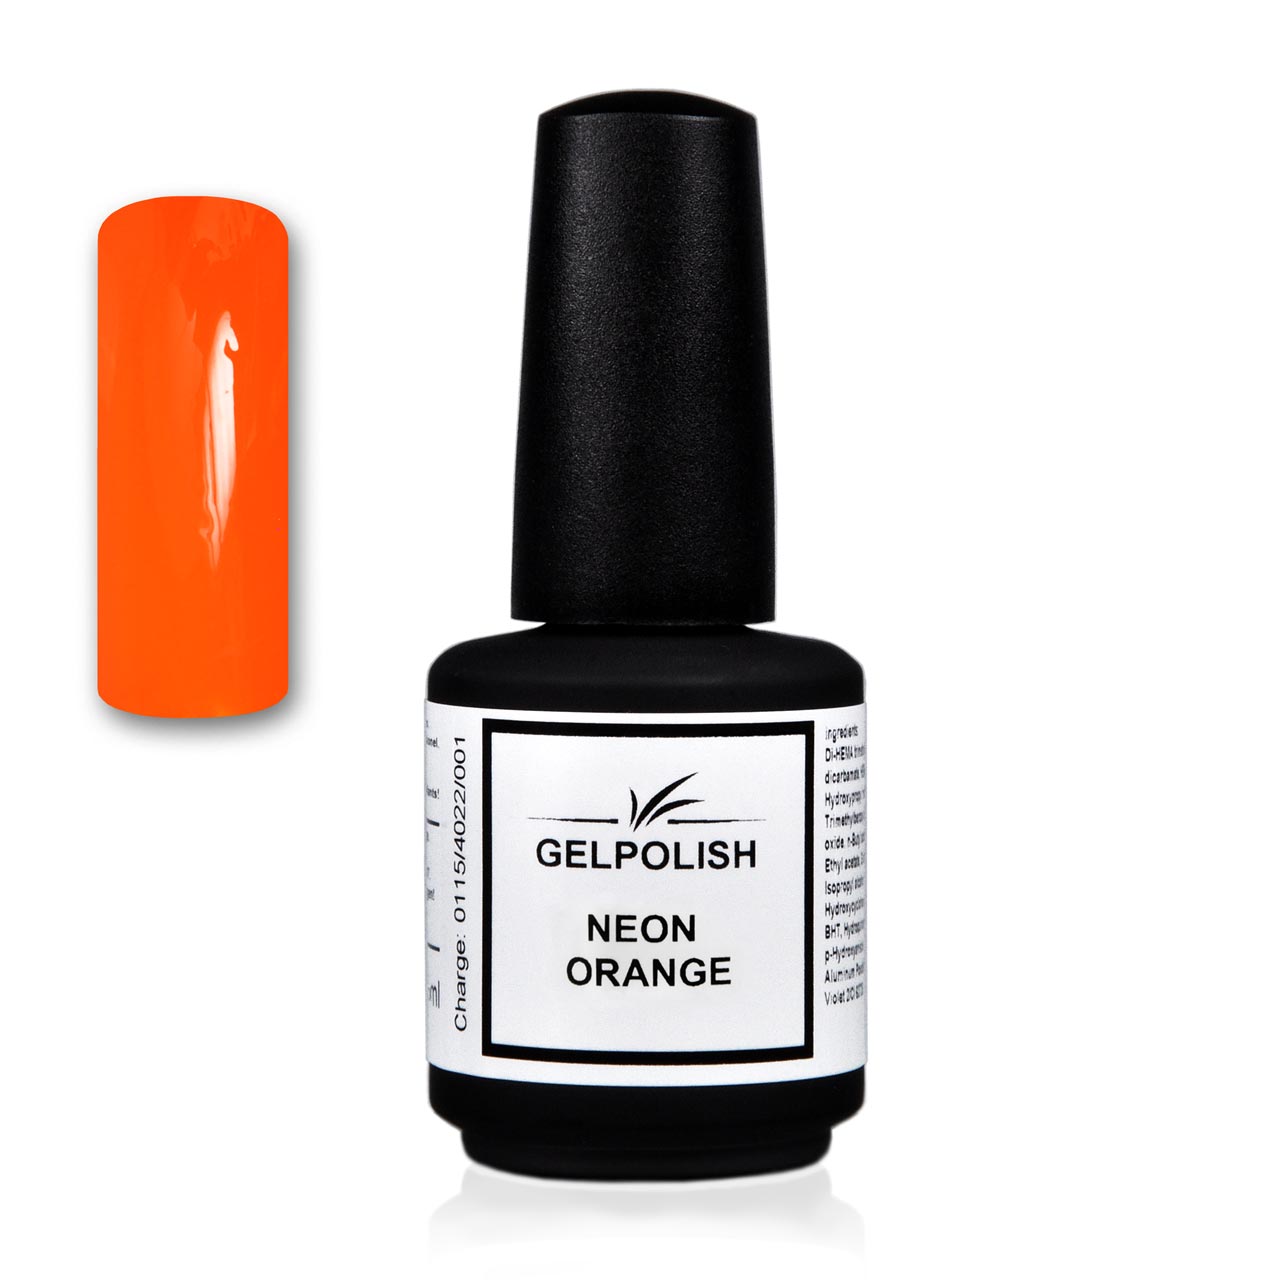 Gelpolish VSP Neon Orange